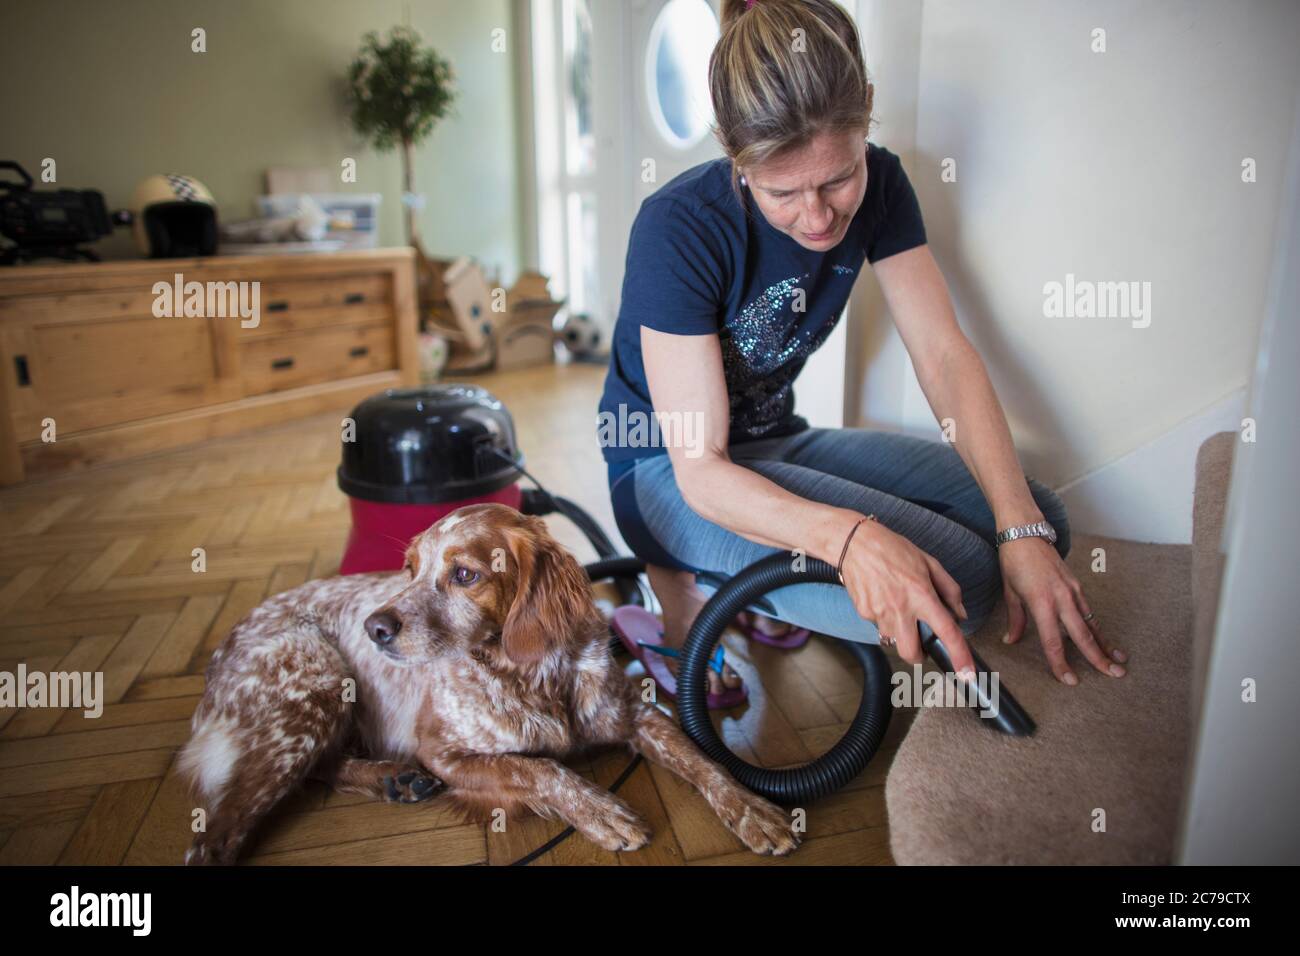 Femme avec un chien passant l'aspirateur sur la moquette des escaliers Banque D'Images